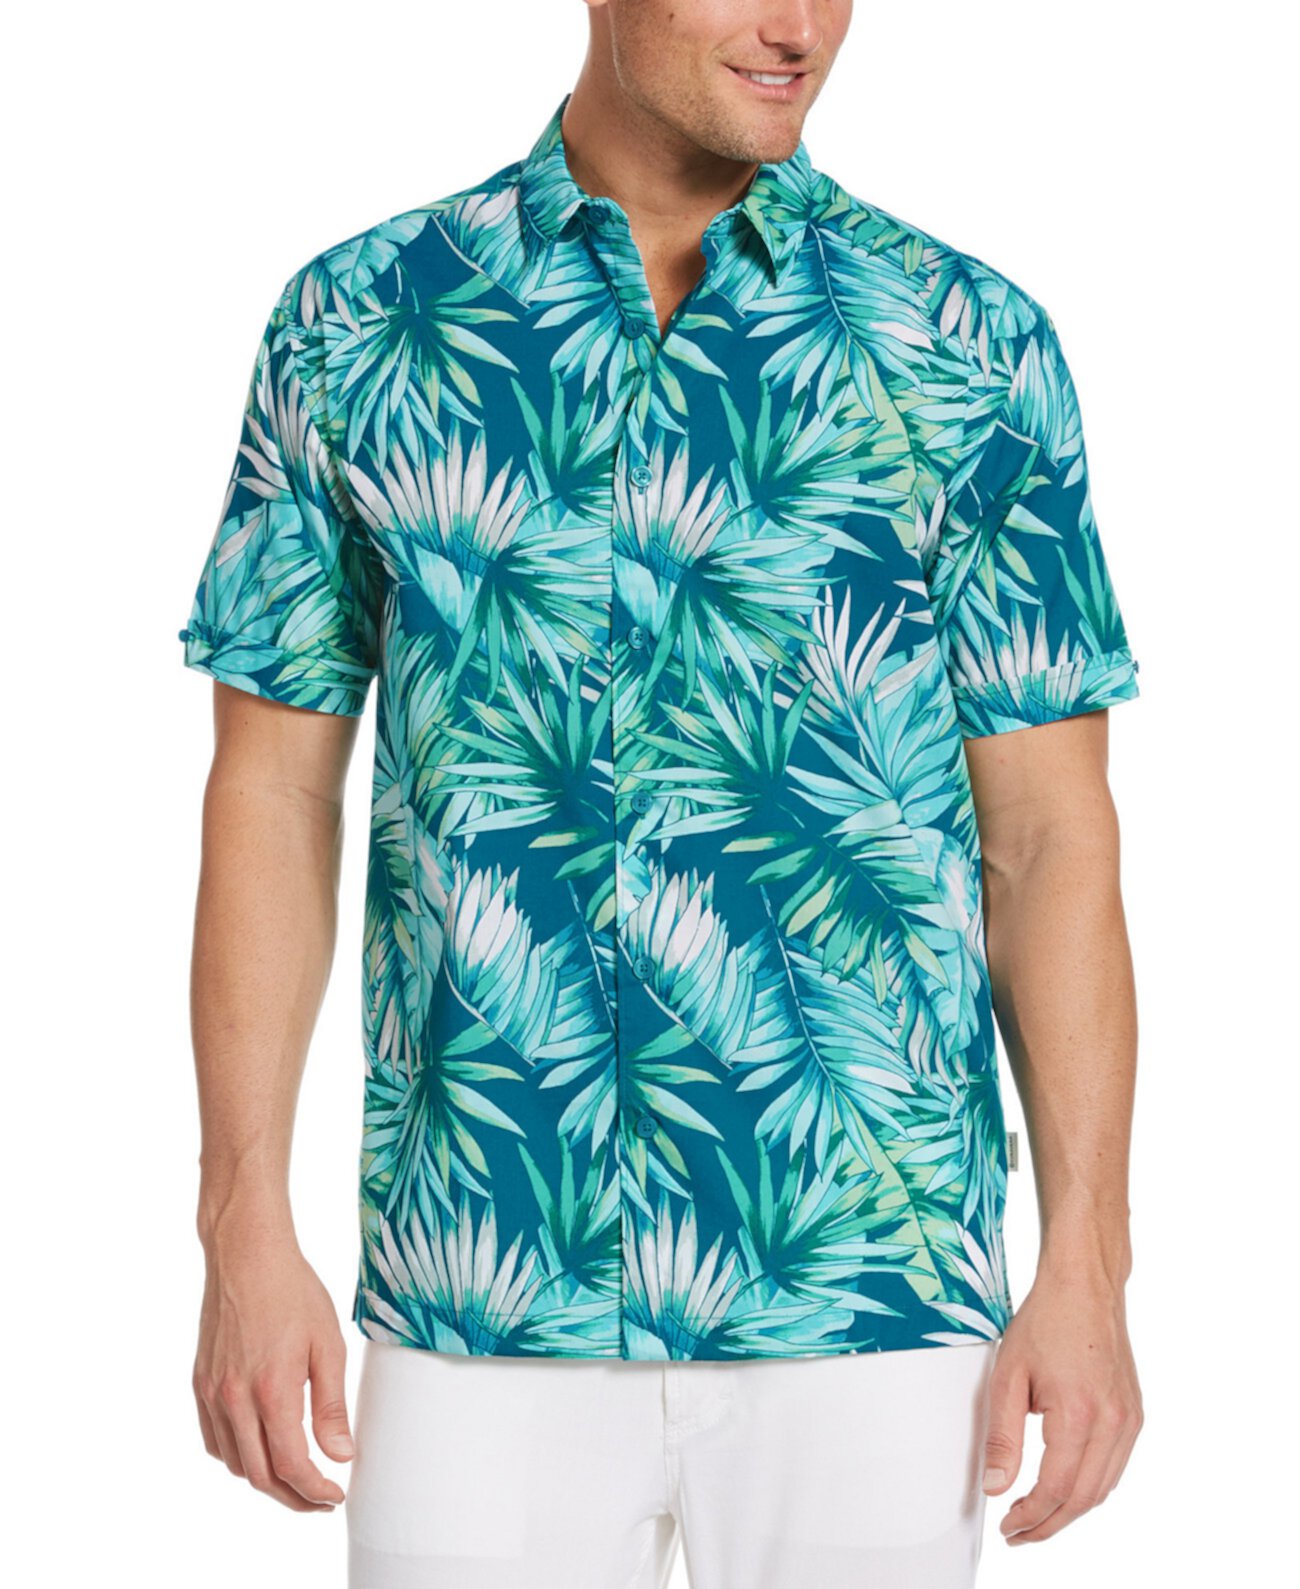 Men's Big & Tall Tropical-Print Shirt Cubavera